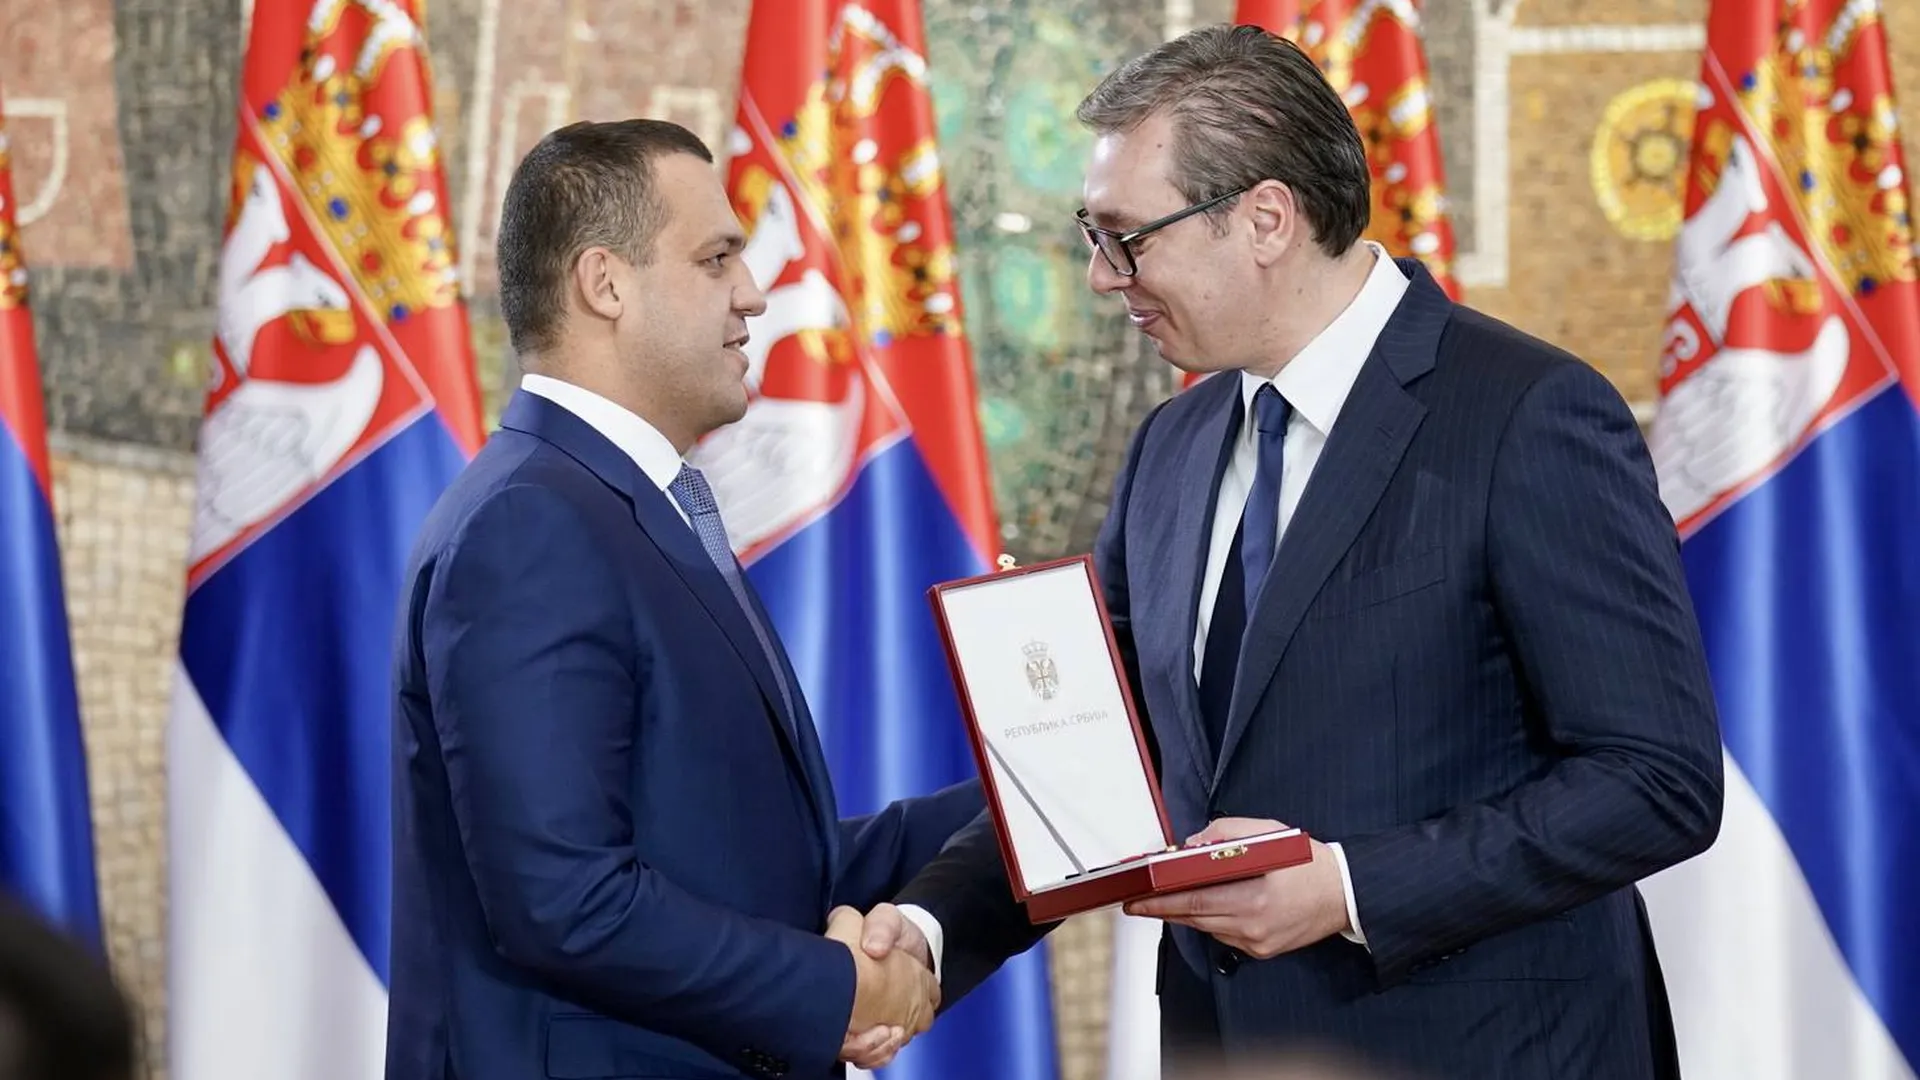 Президент IBA Умар Кремлев получил от президента Сербии орден за развитие бокса